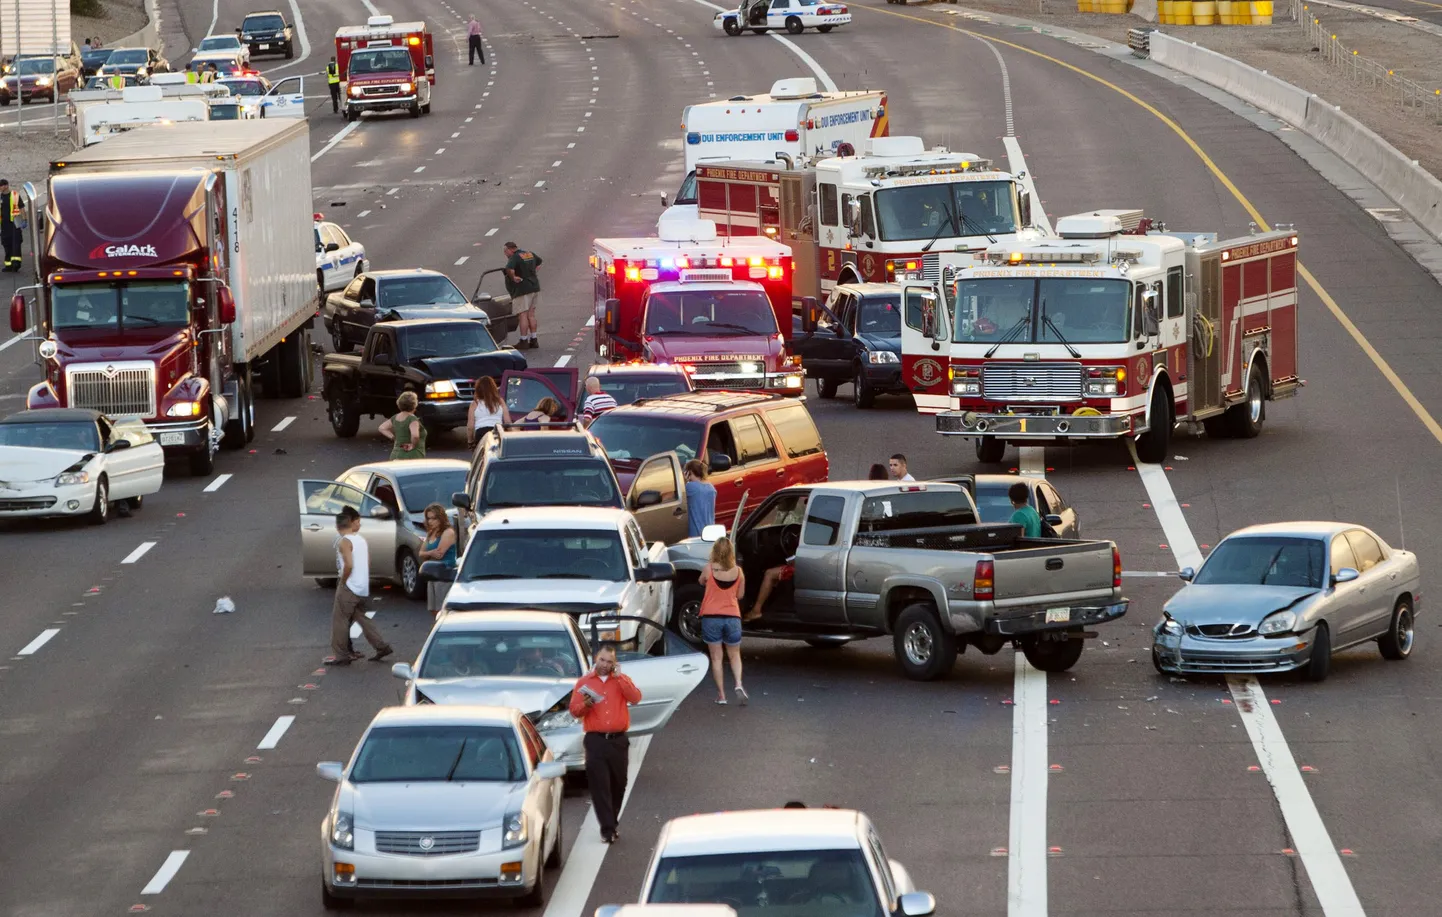 Часть машин, столкнувшихся в крупном ДТП на шоссе в американском штате Аризона 28 августа 2010.